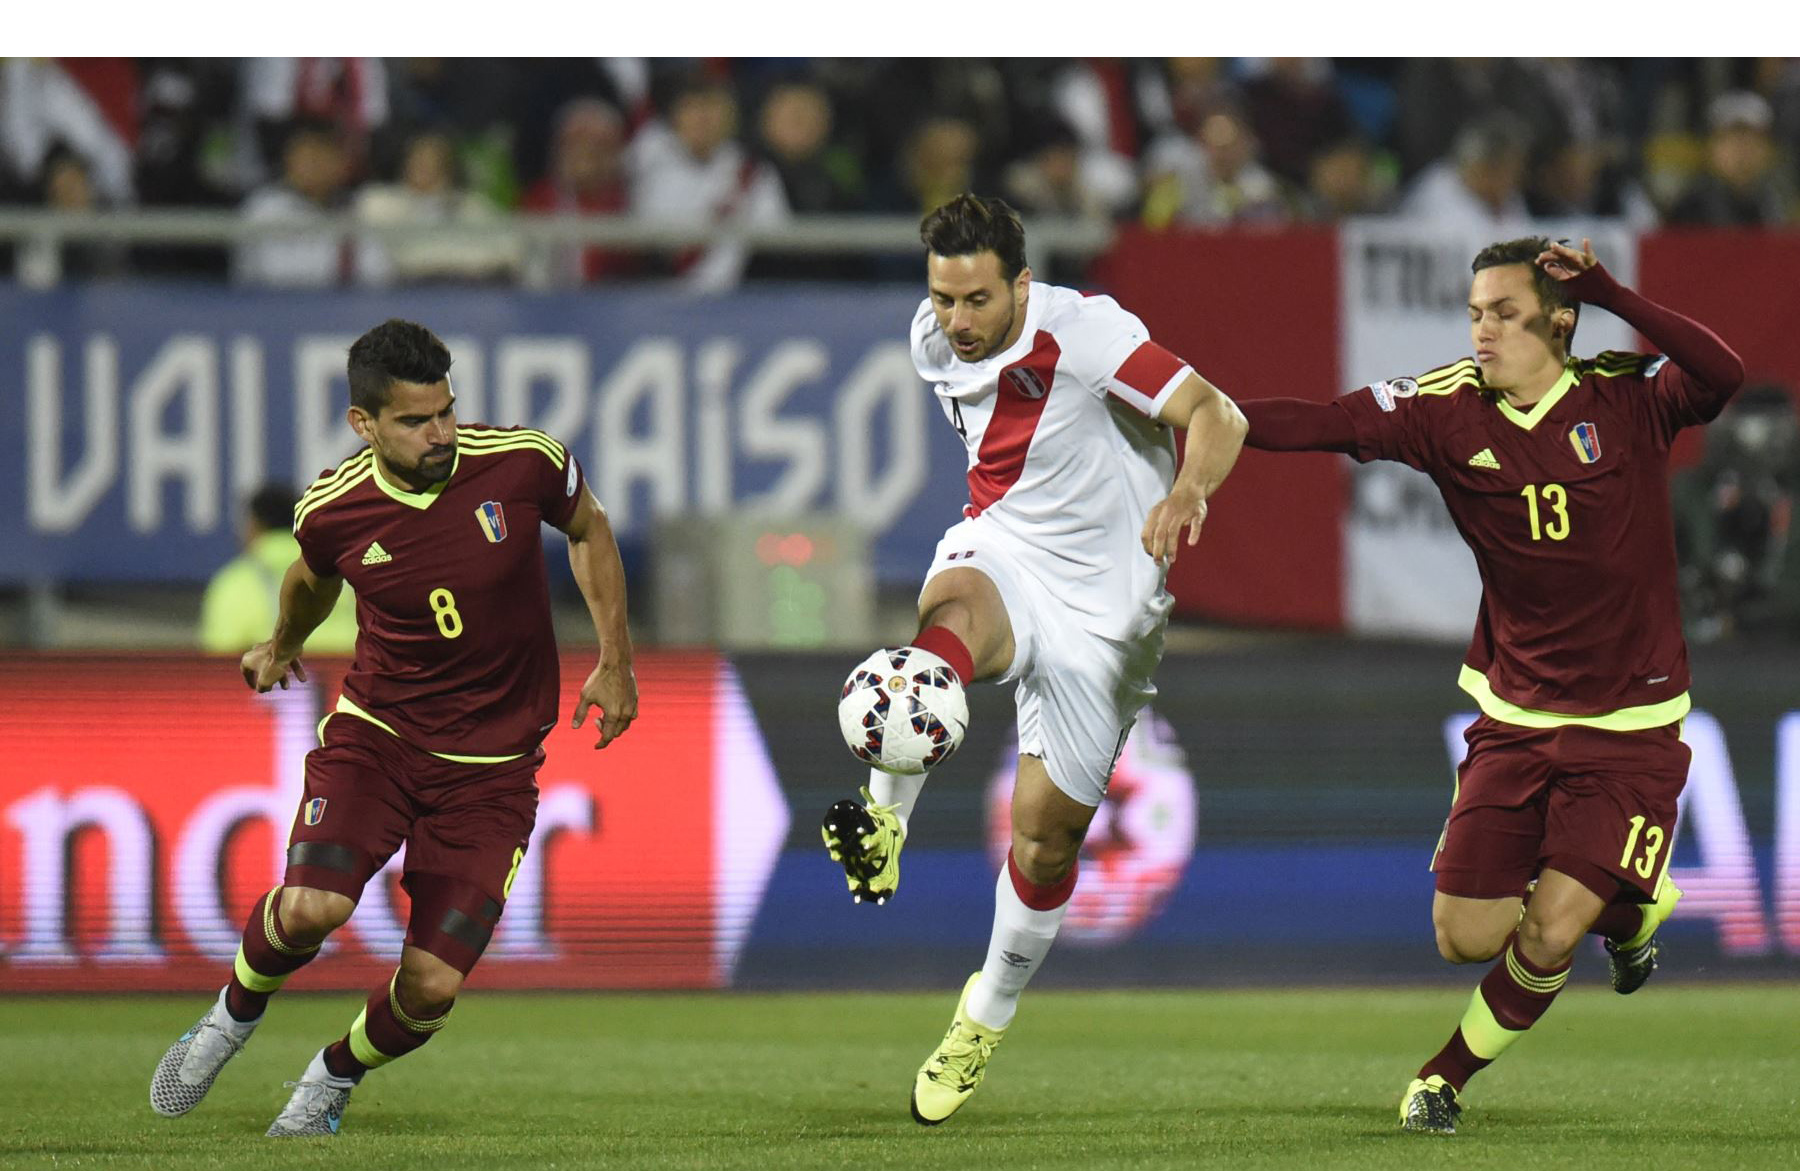 La selección venezolana espera alzarse ante Perú en las eliminatorias a Rusia 2018 con talento joven en la cancha